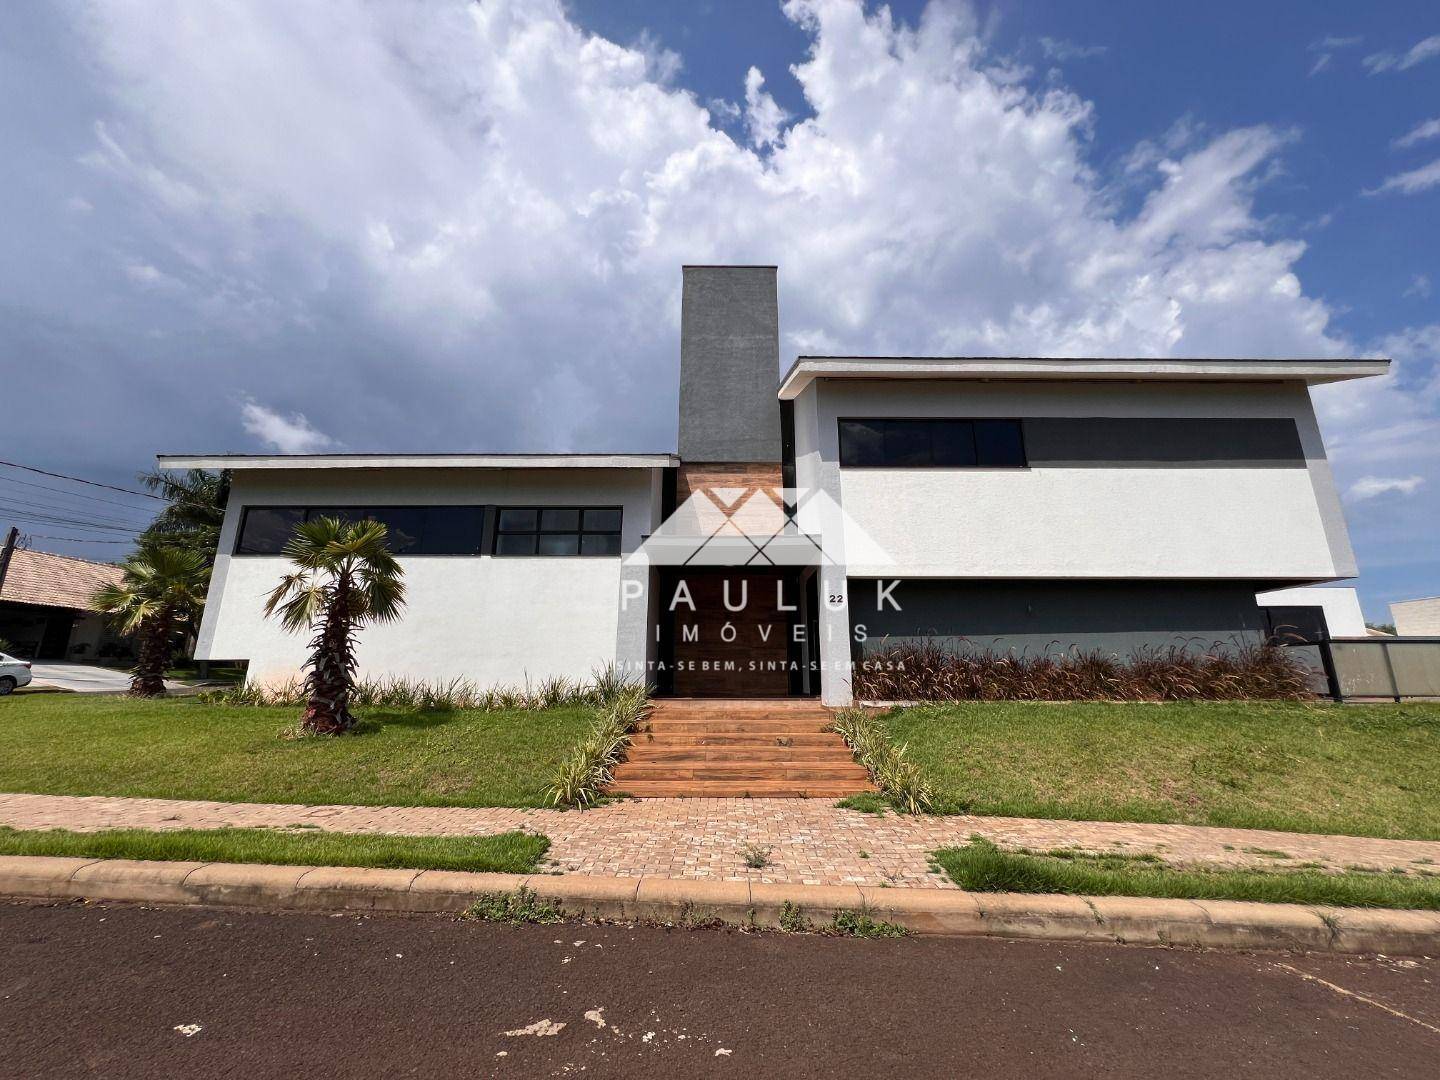 Sobrado com 5 Dormitórios Sendo 4 Suítes à venda Por R$ 2.000.000 - Condomínio Residencial Central P | PAULUK IMÓVEIS | Portal OBusca